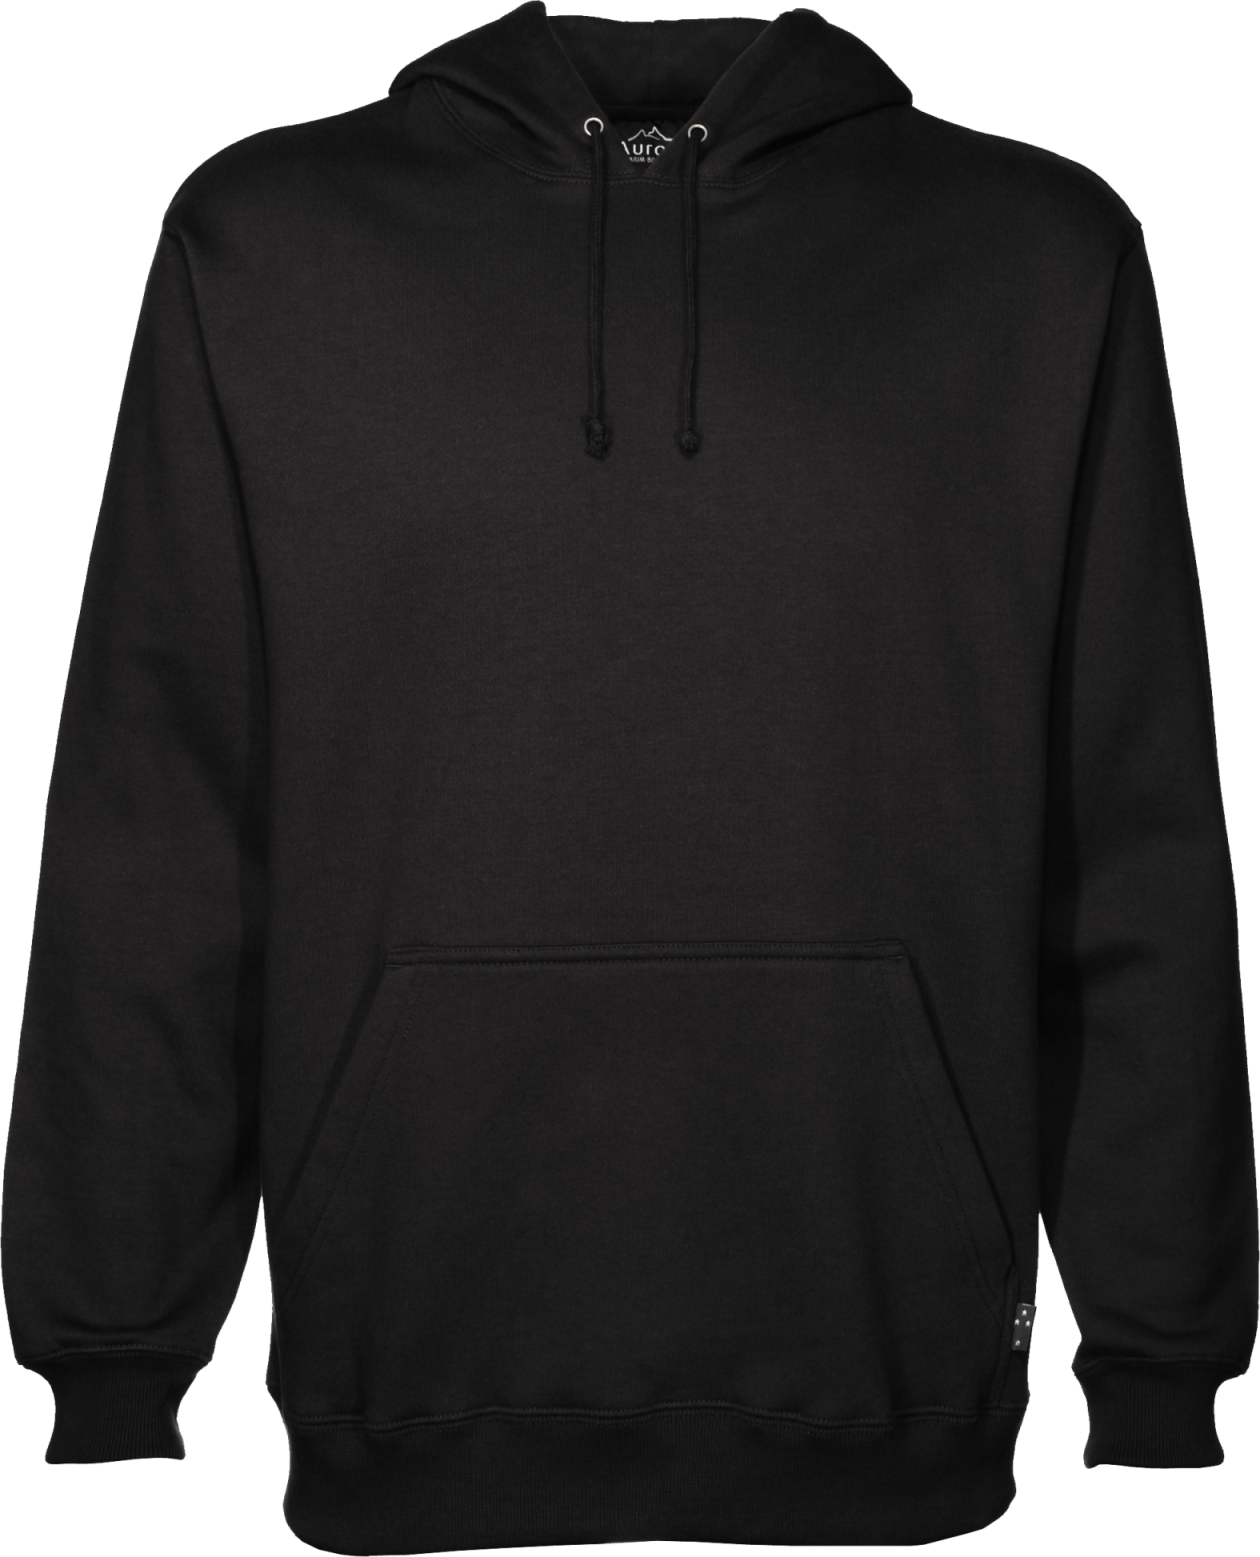 blank-black-hoodie-template